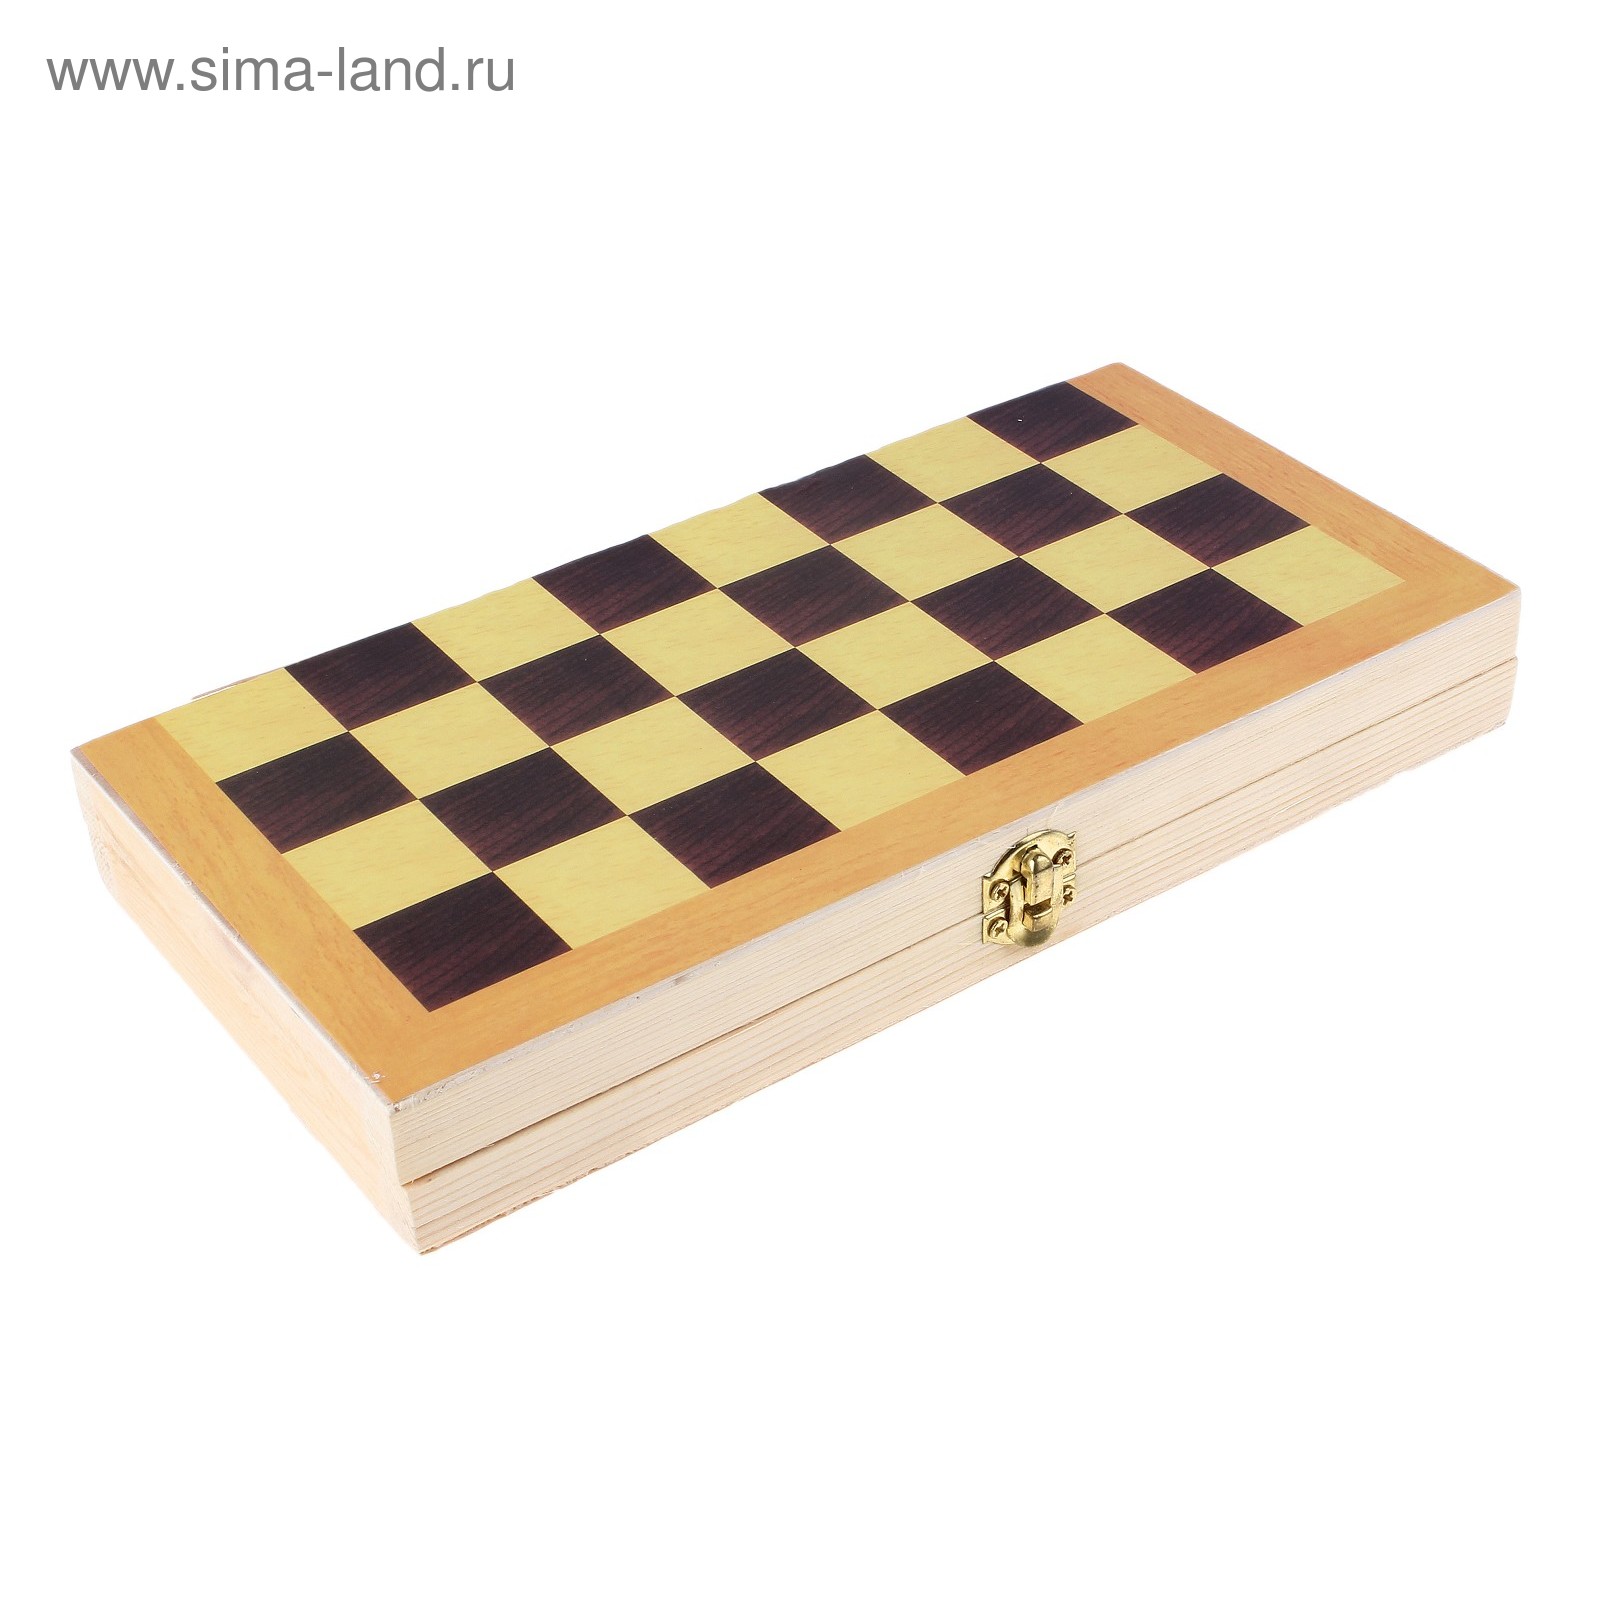 Шахматы настольные, поле 24 × 24 см, УЦЕНКА (перекосы доски)